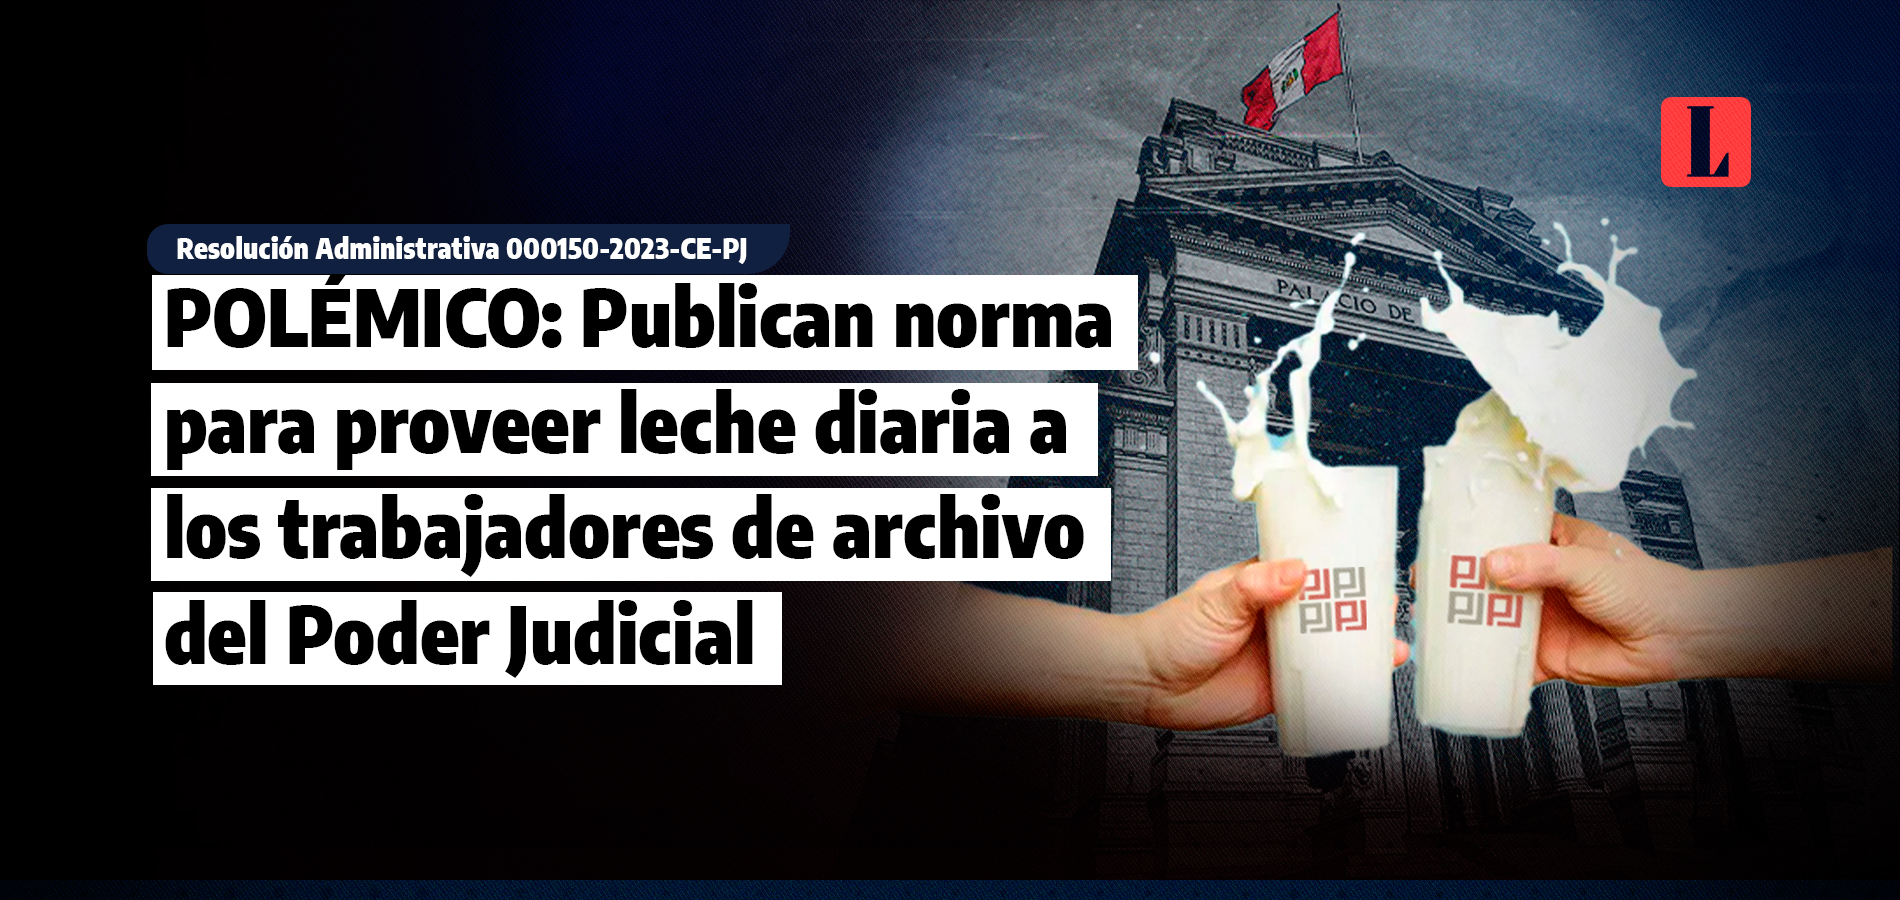 Publican norma para proveer de leche diaria a los trabajadores de archivo del Poder Judicial